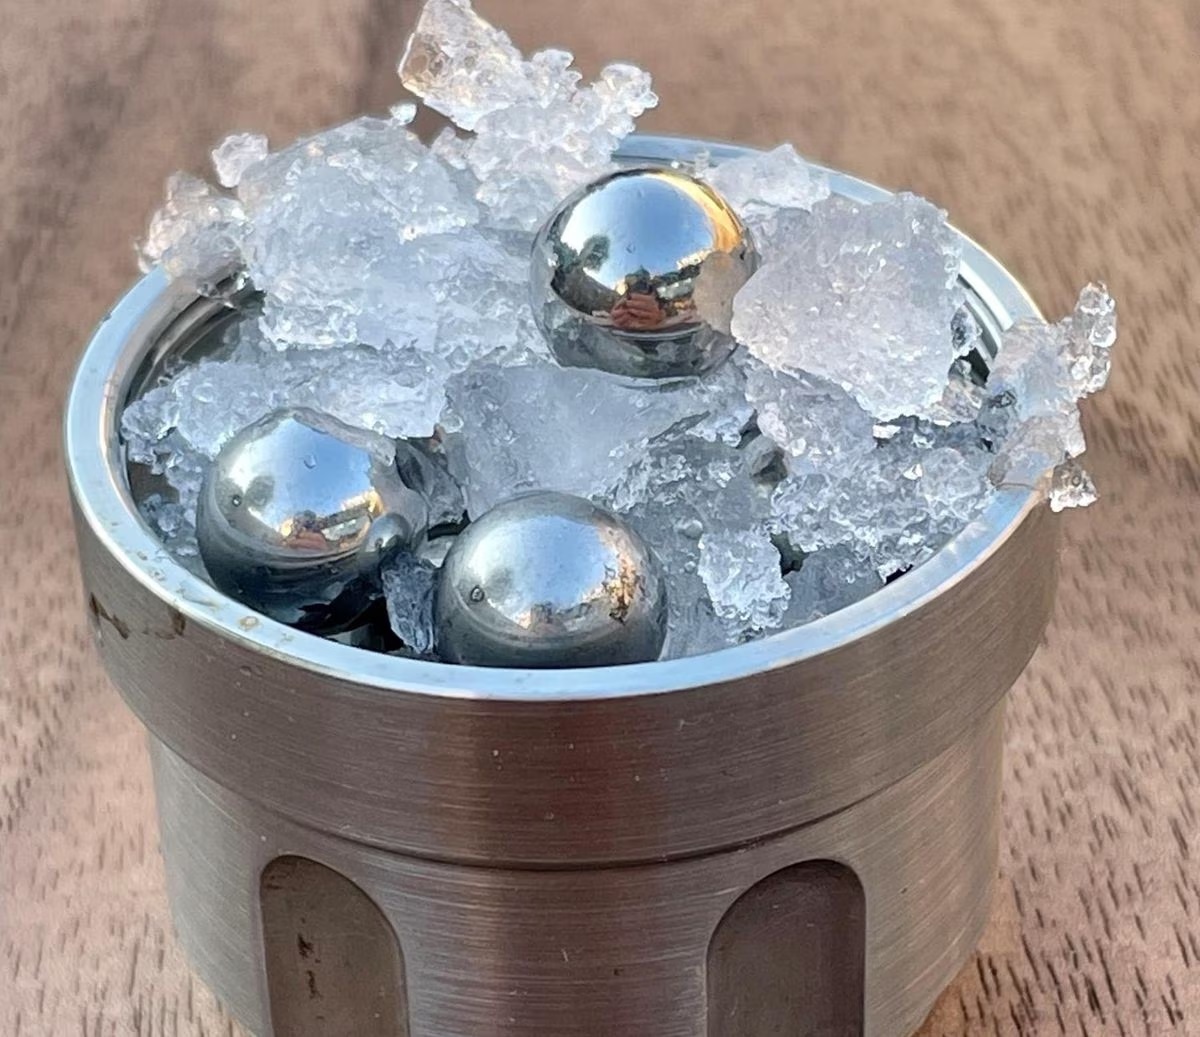 Para lograr el MDA, el equipo usó un proceso de fresado del hielo por medio de bolas de acero en un recipiente enfriado a unos -200 grados. (EFE)